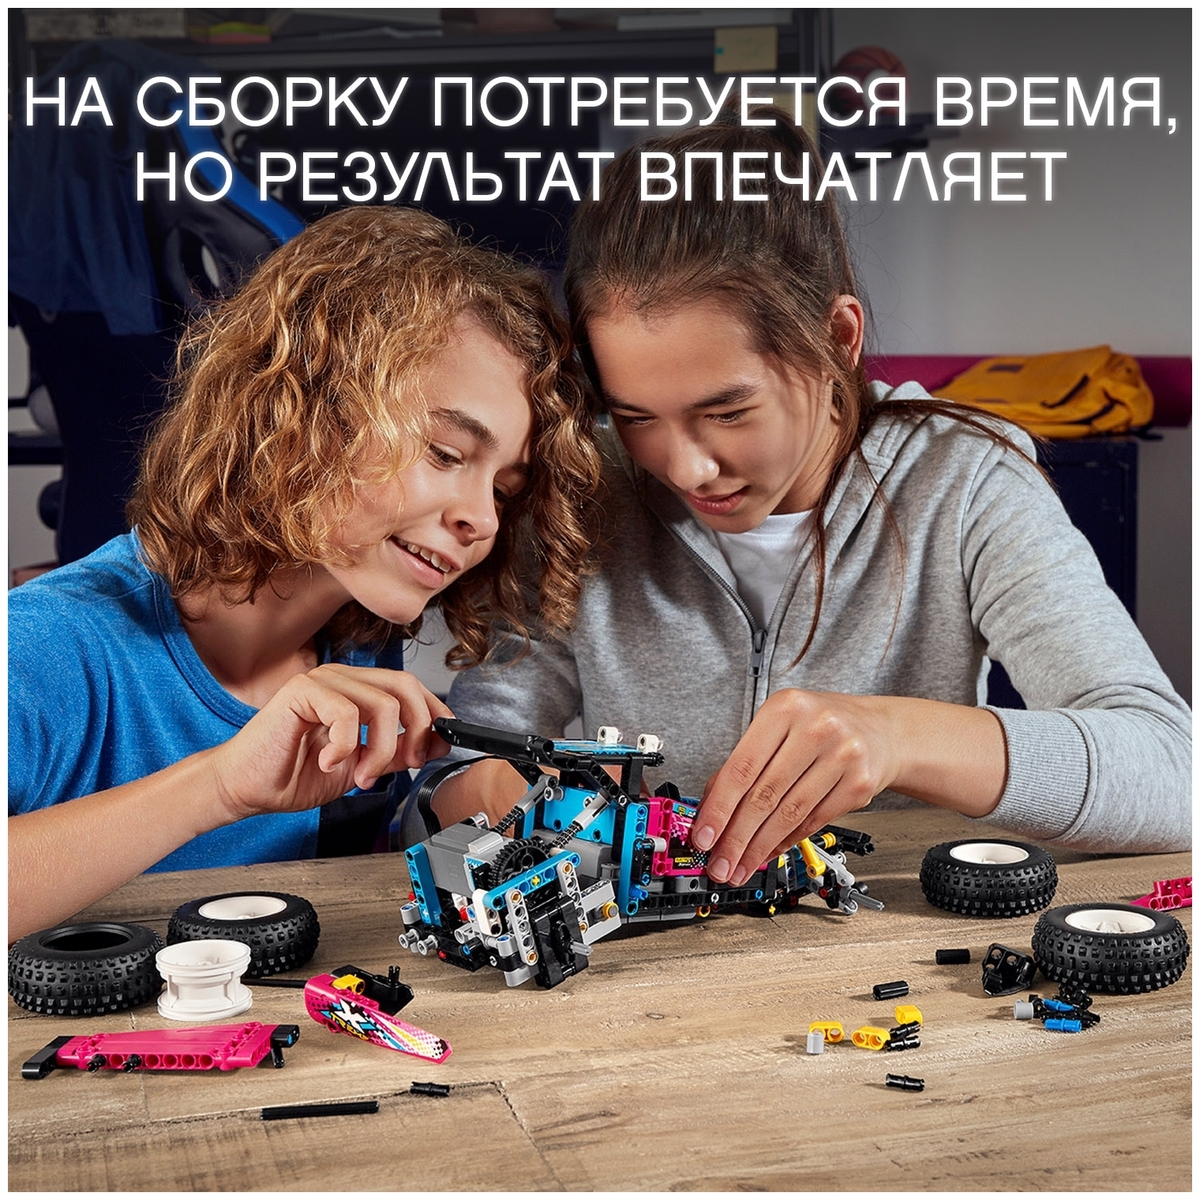 Конструктор LEGO 42124 Техник Багги-внедорожник Казахстан